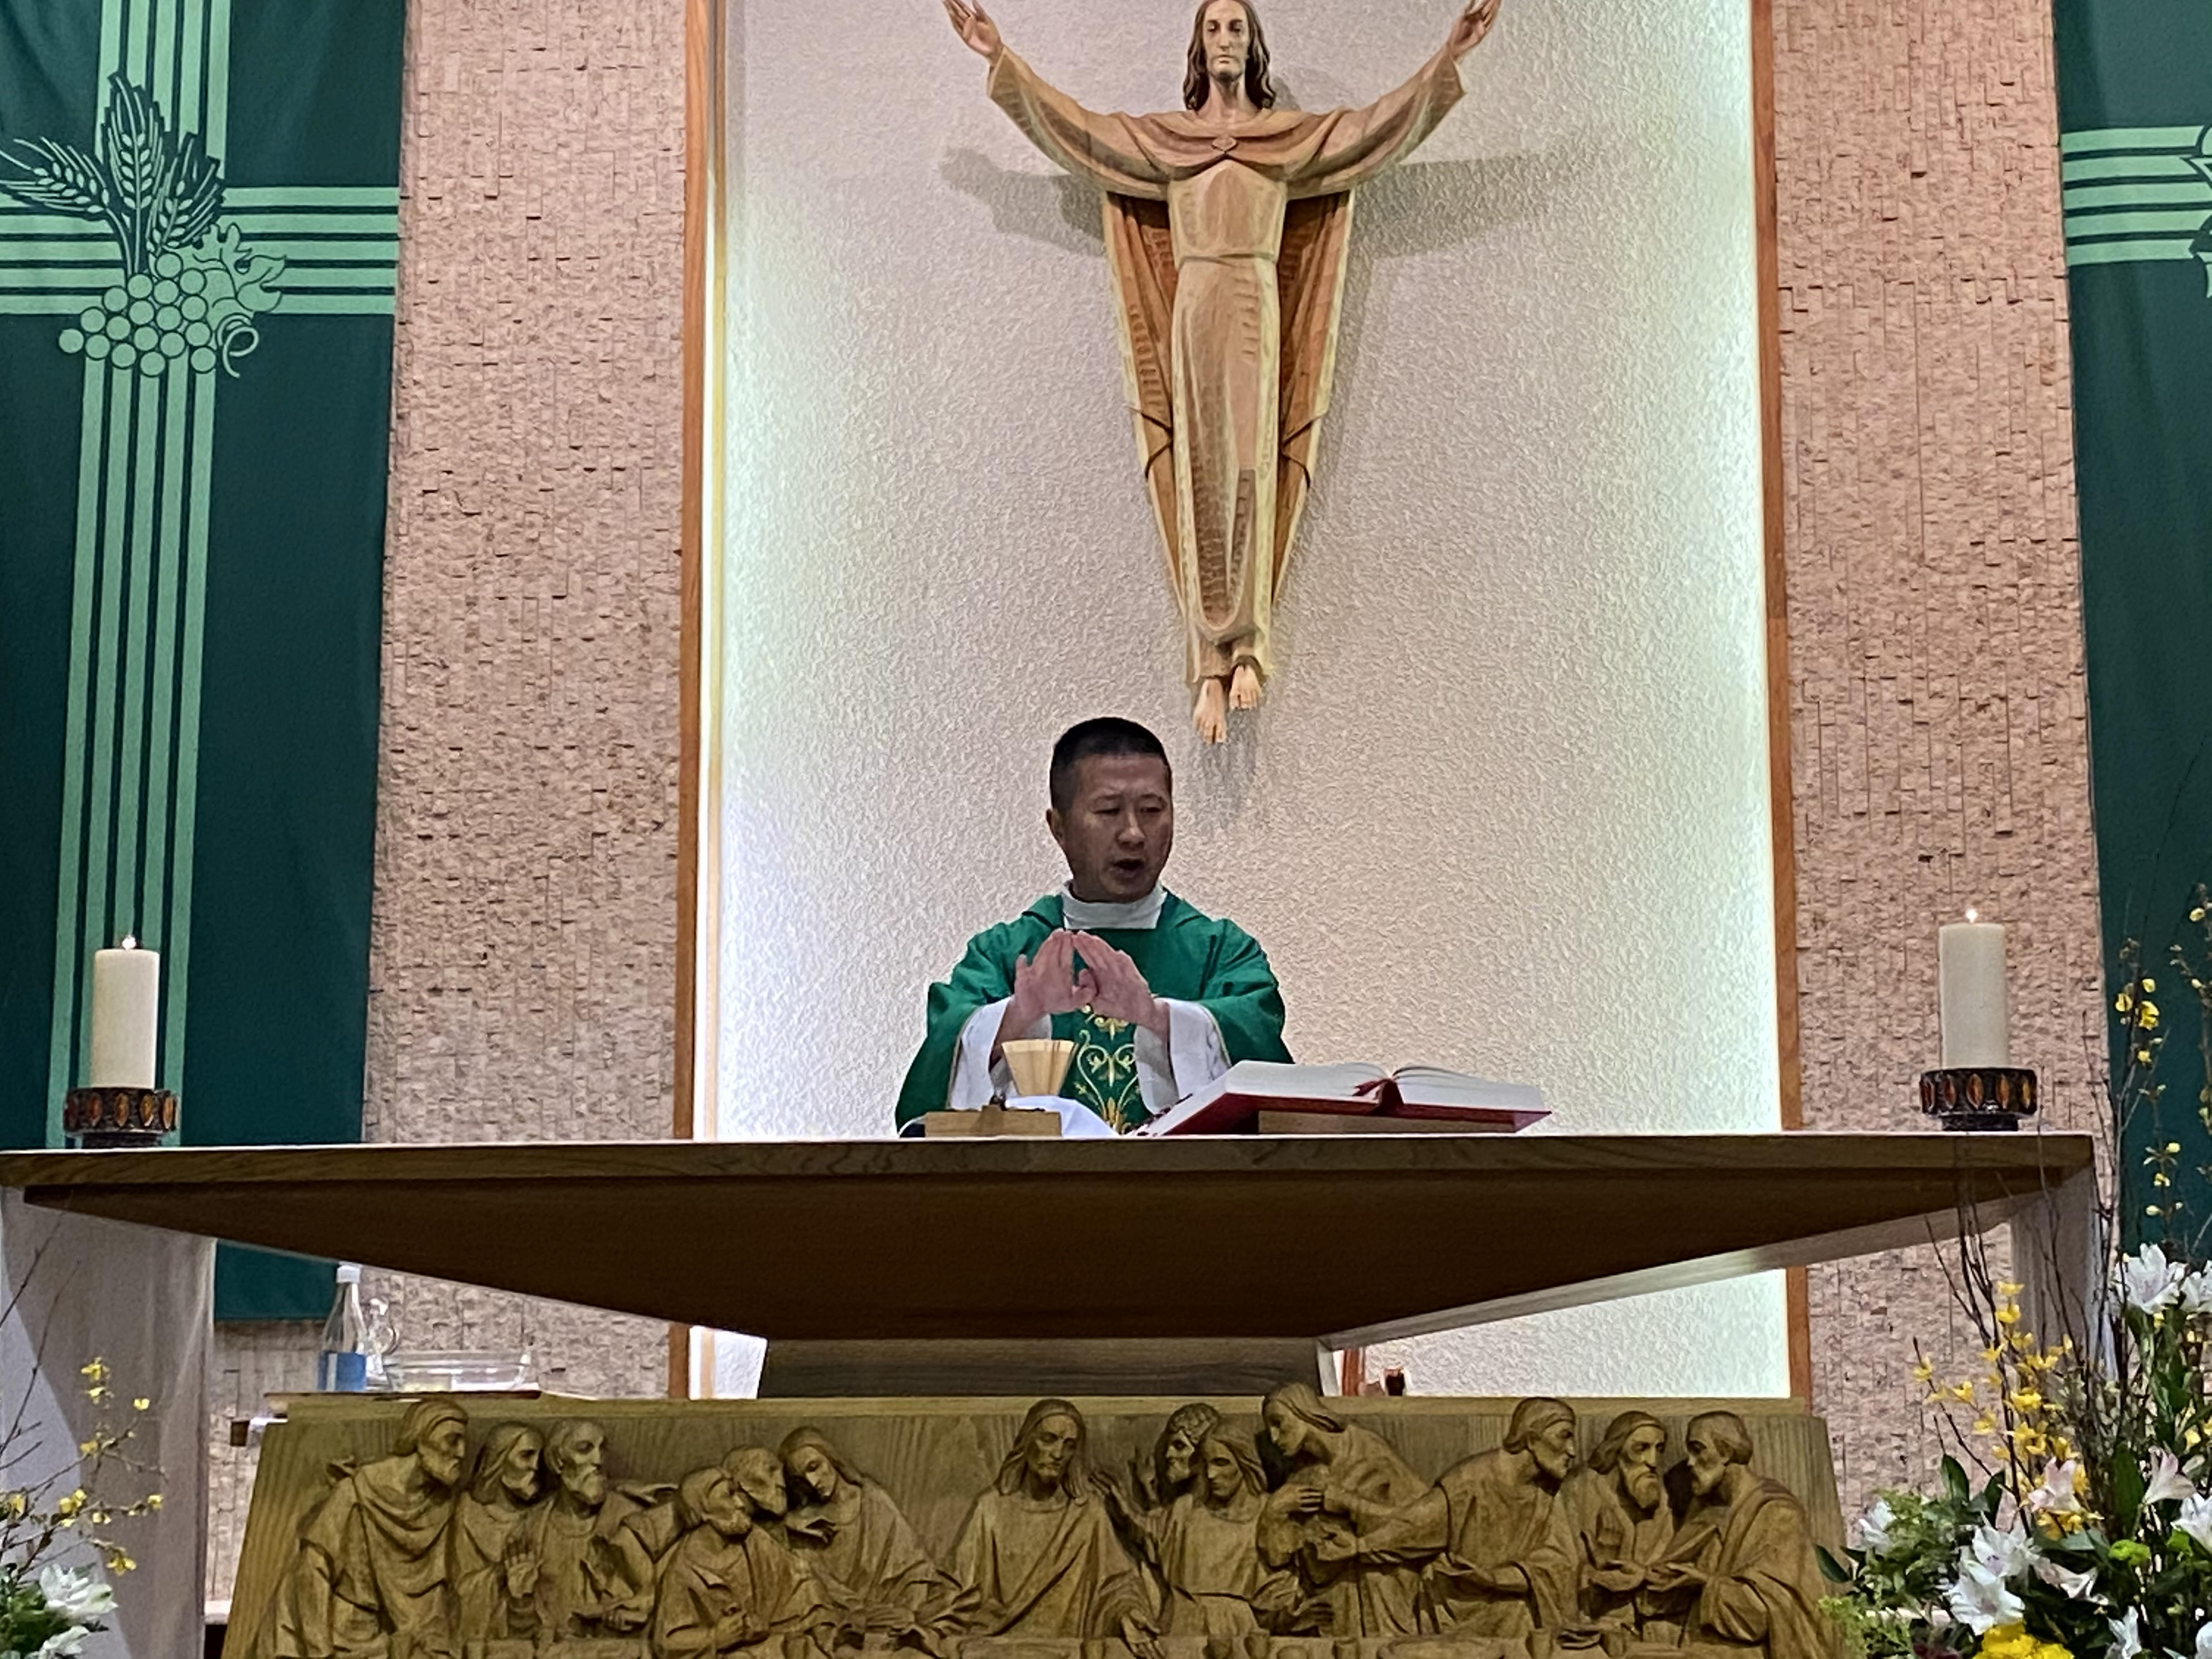 Fr. Joseph saying mass